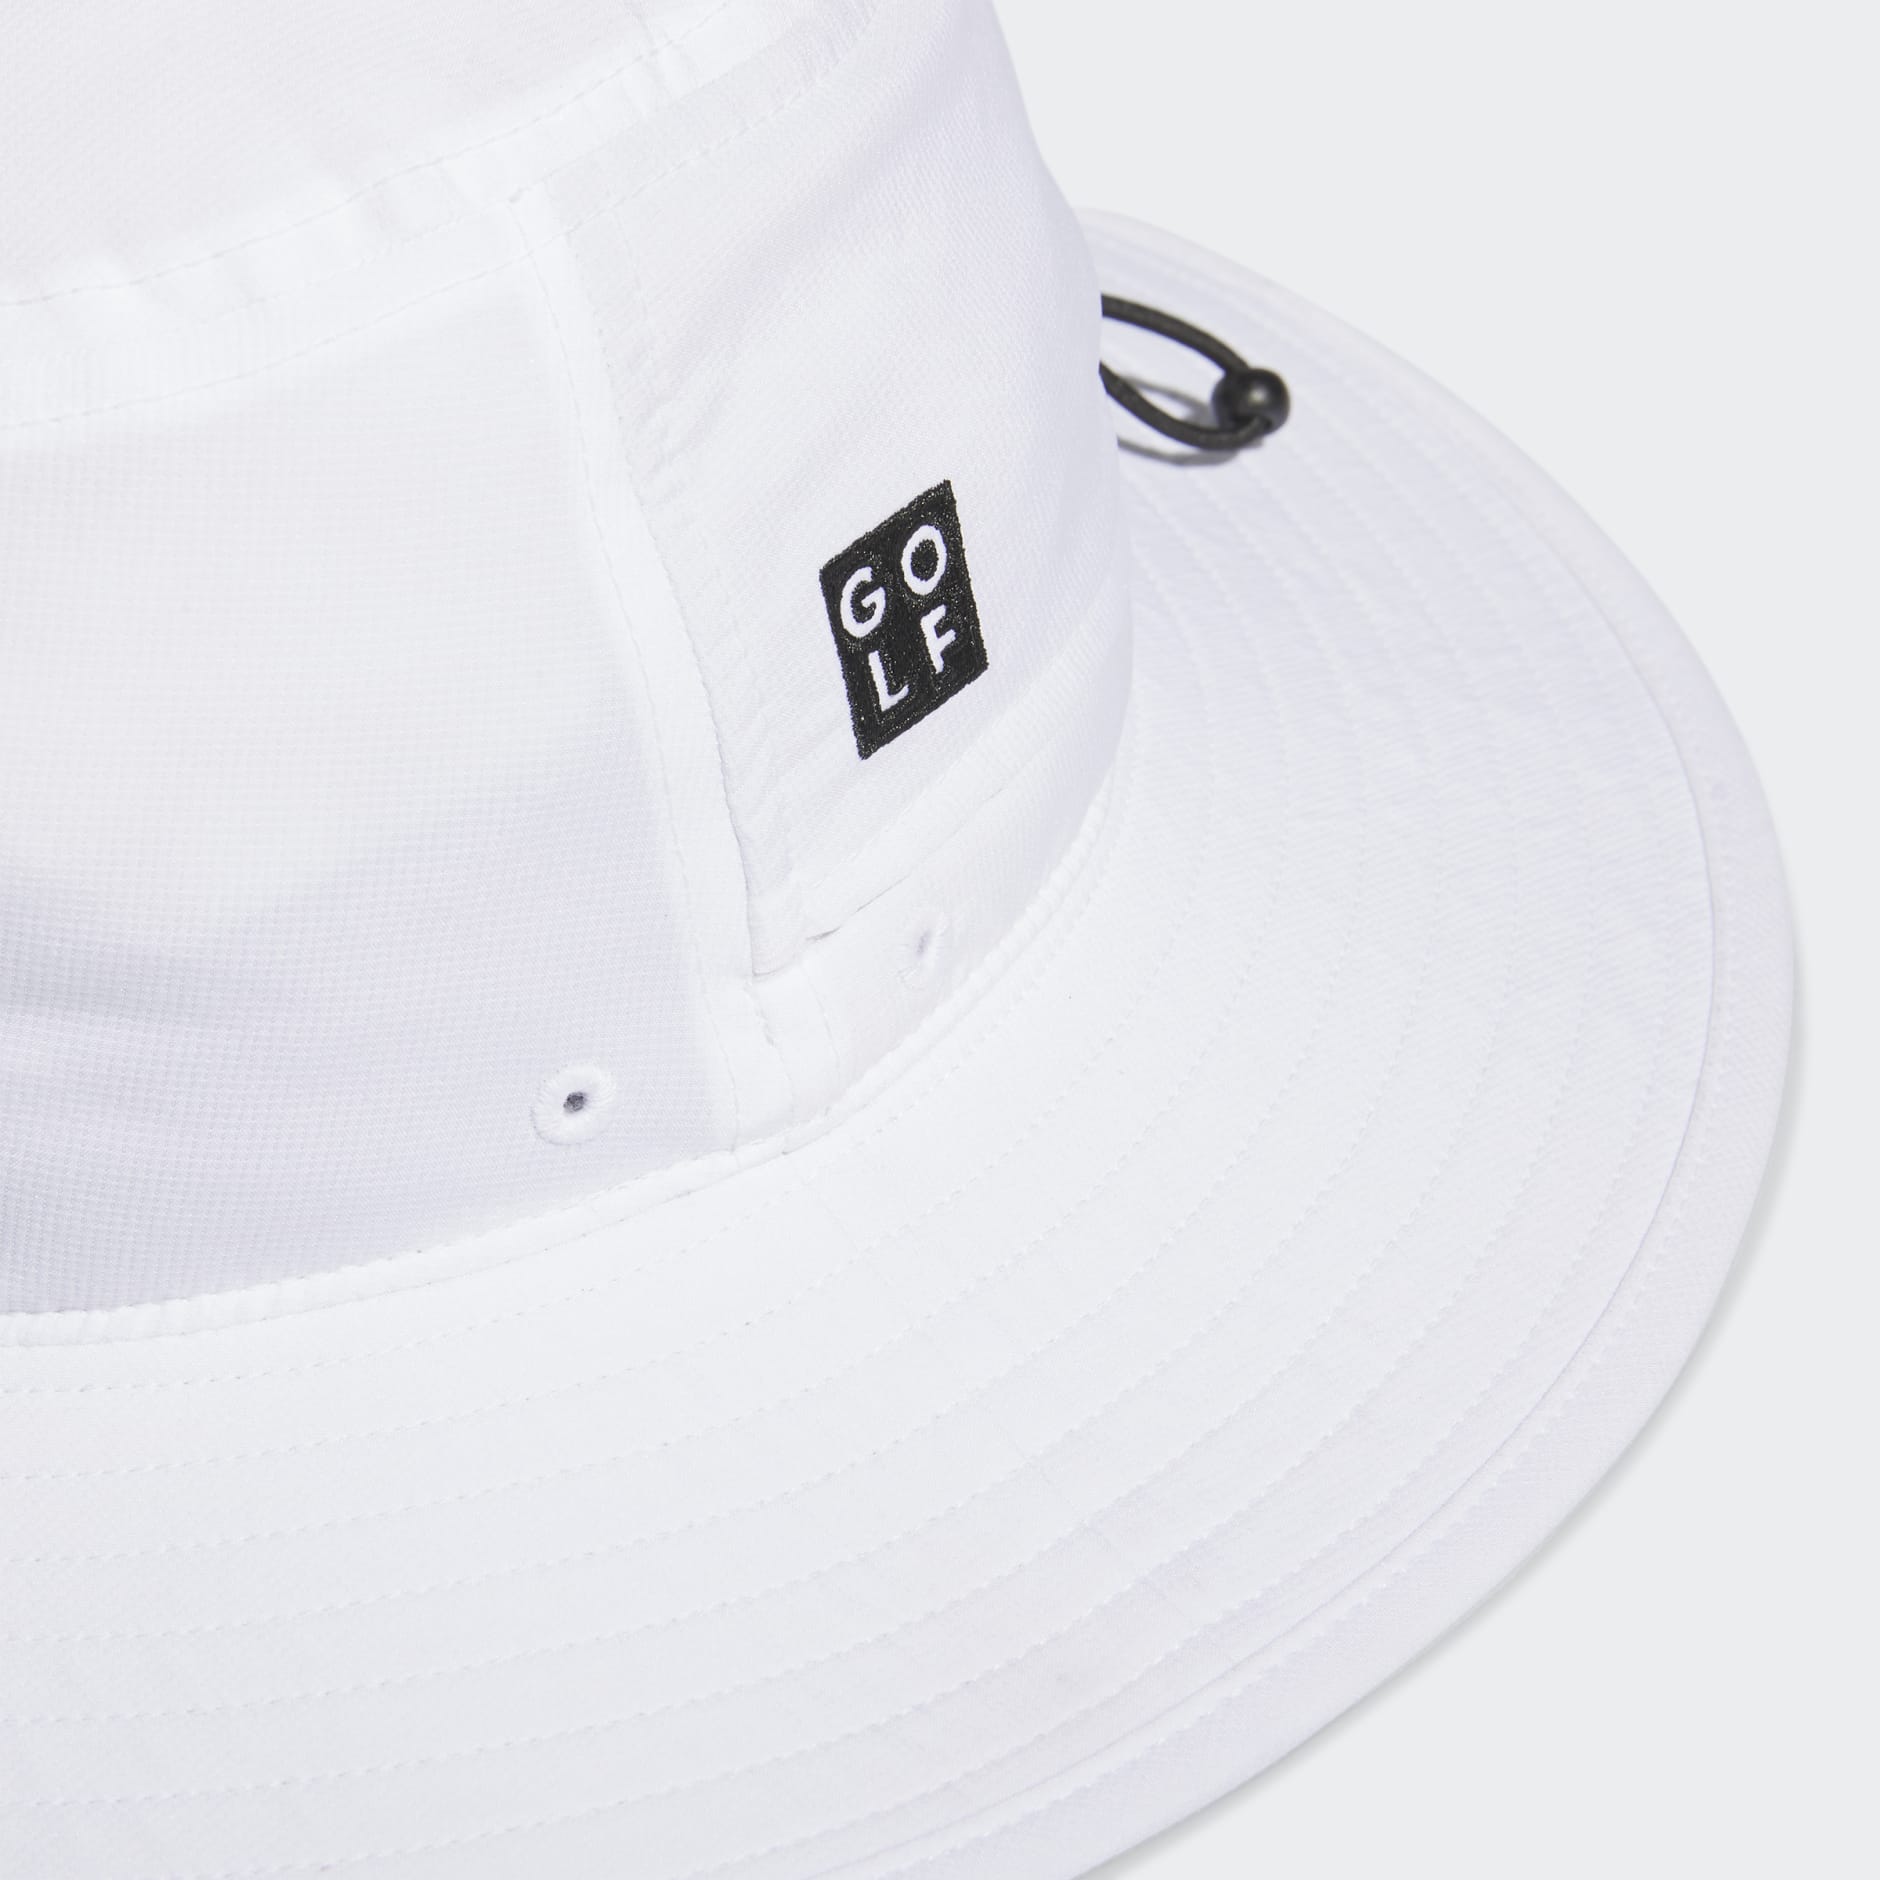 Accessories - Wide-Brim Golf Hat - White